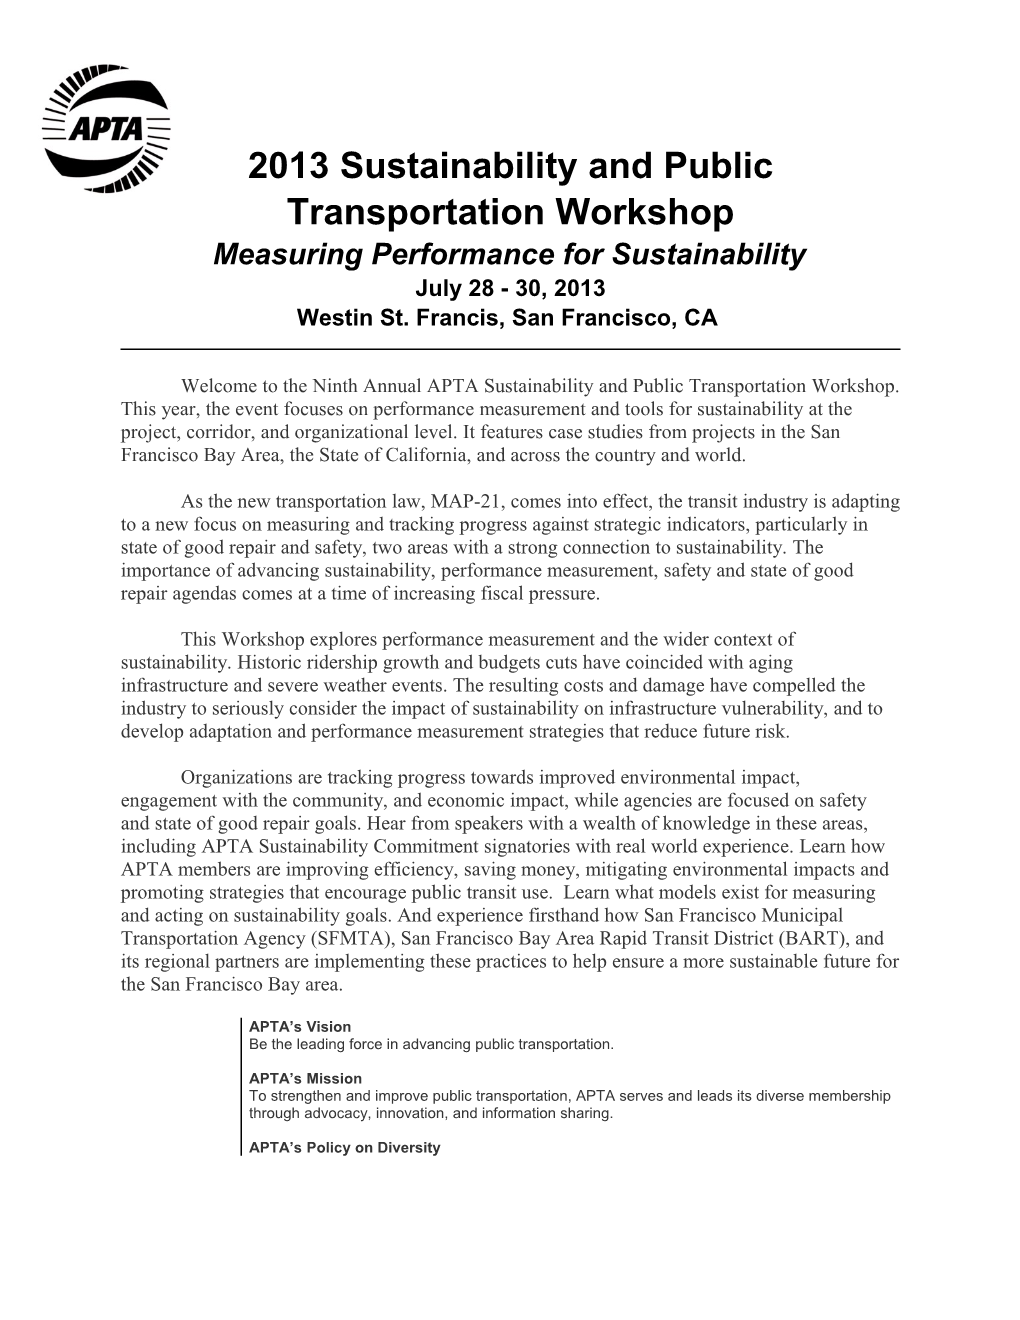 2013 Sustainability and Public Transportation Workshop